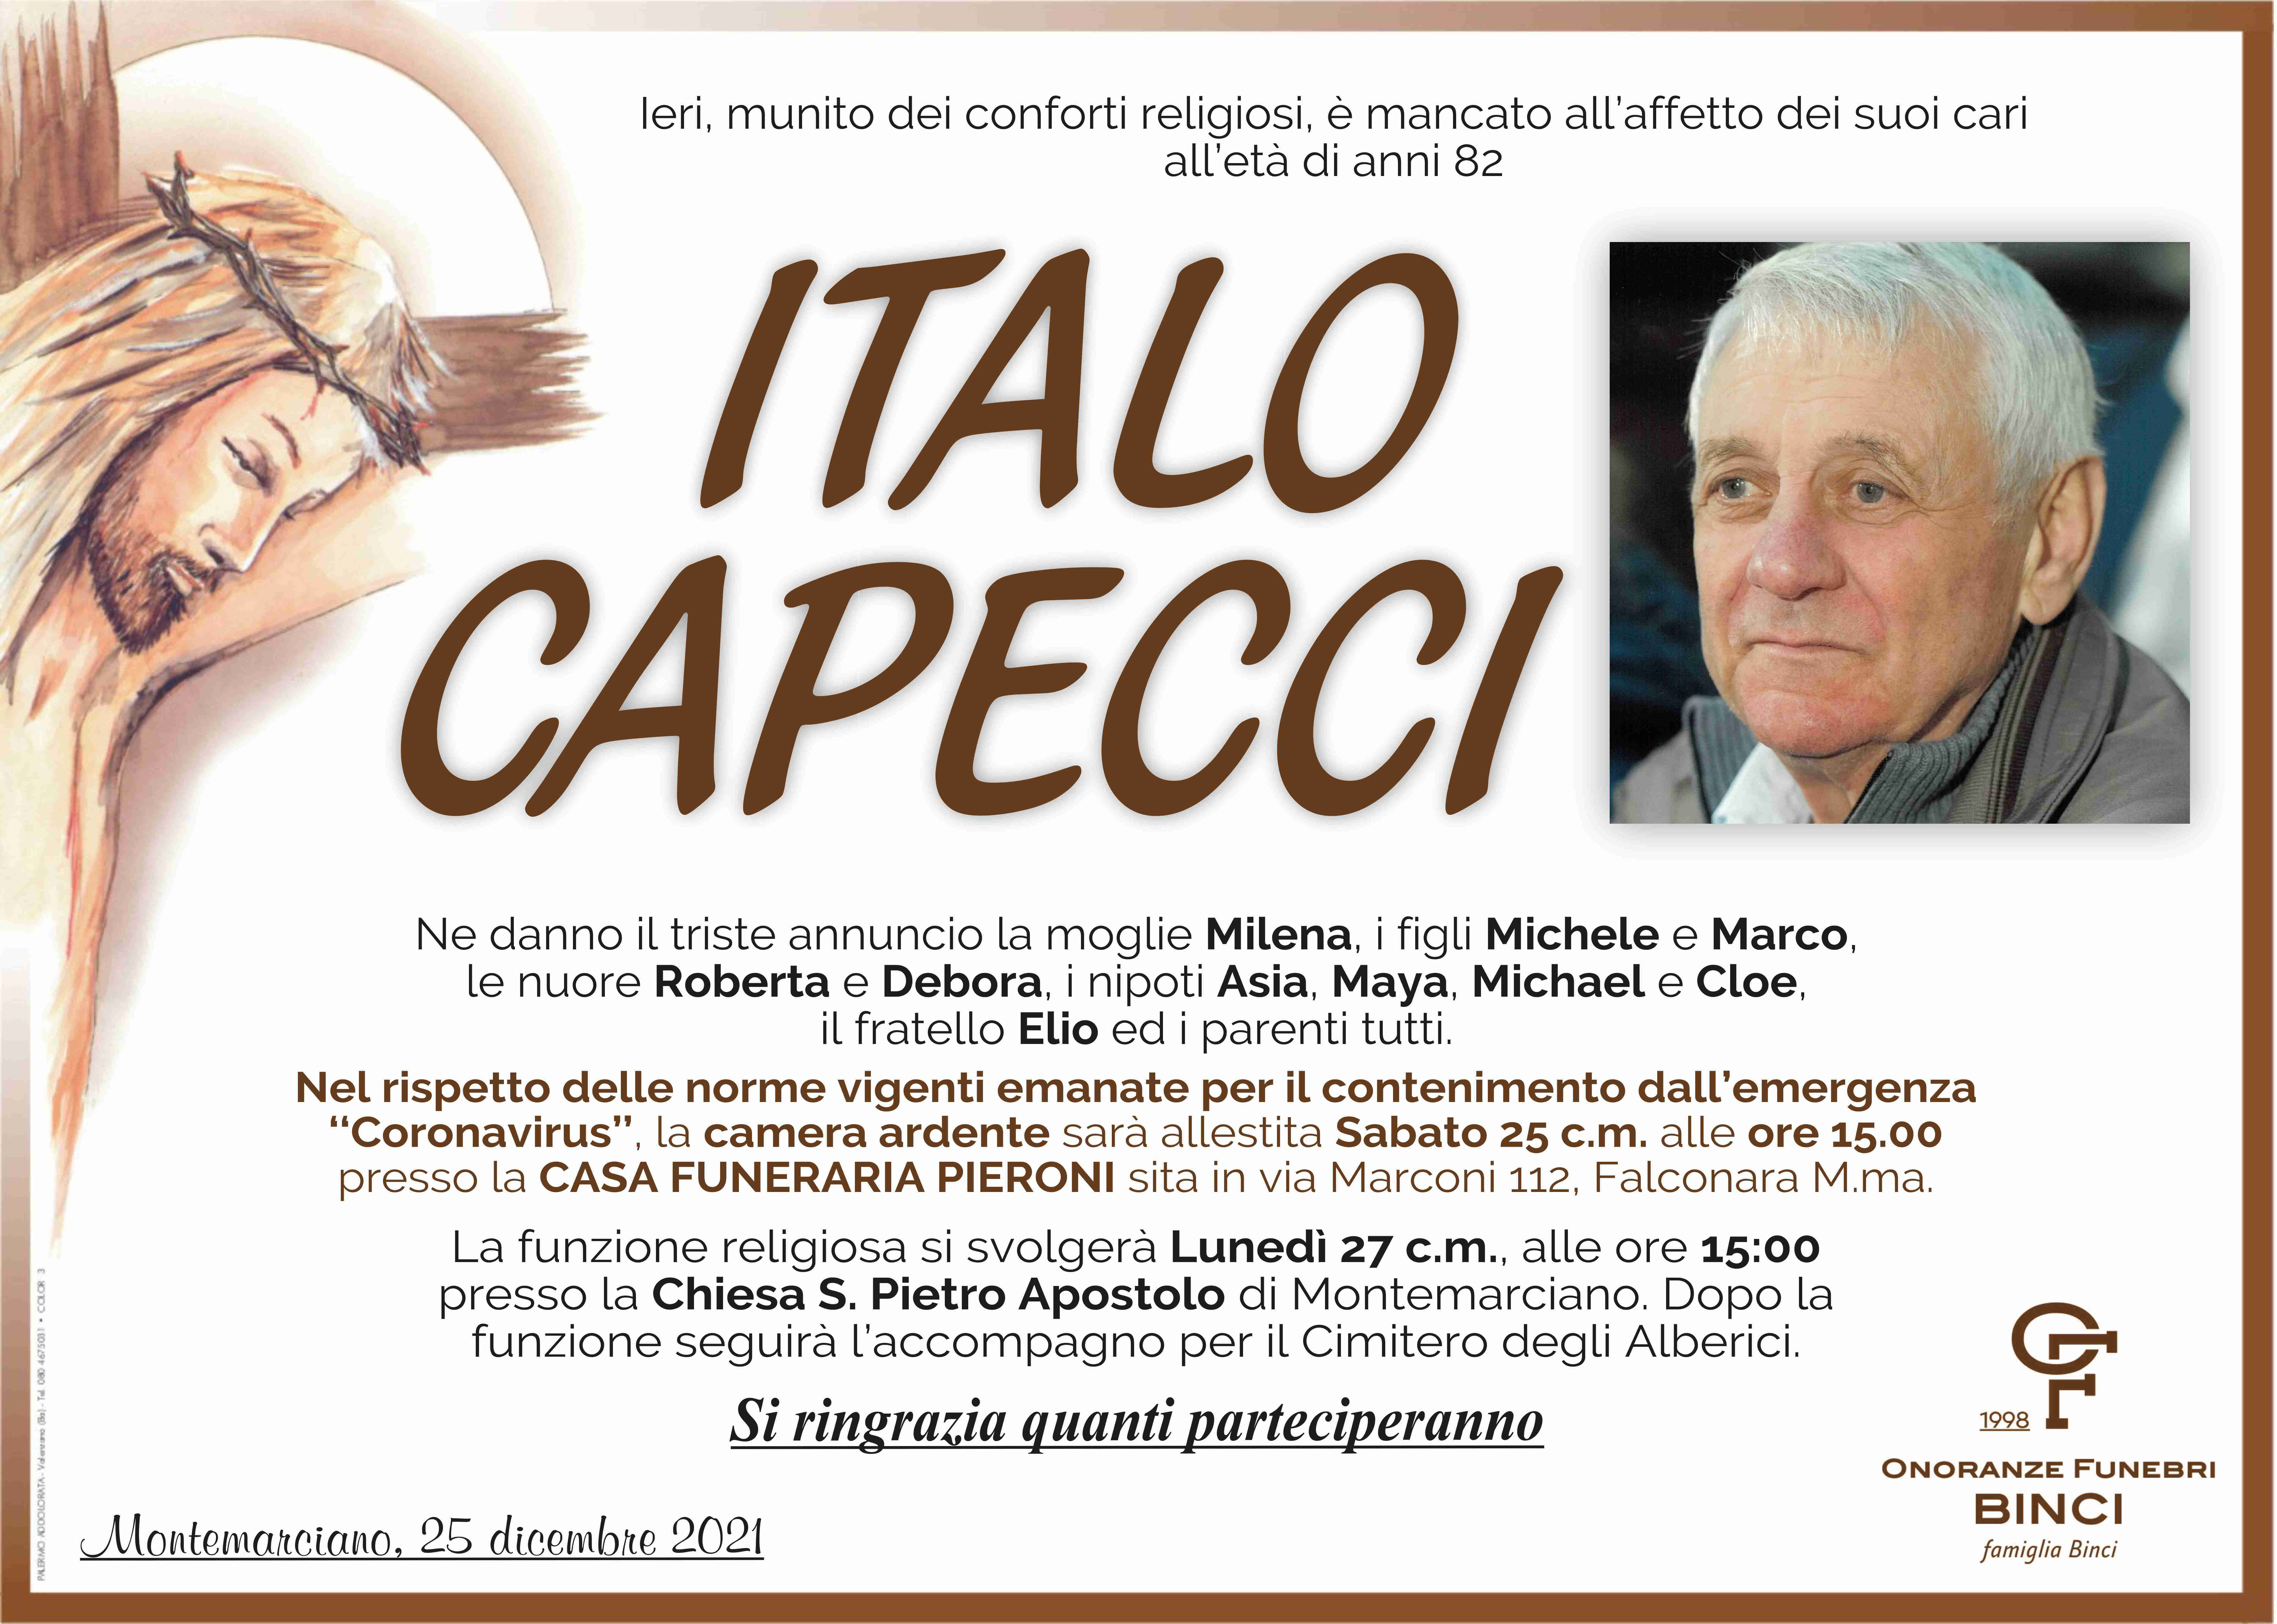 Italo Capecci